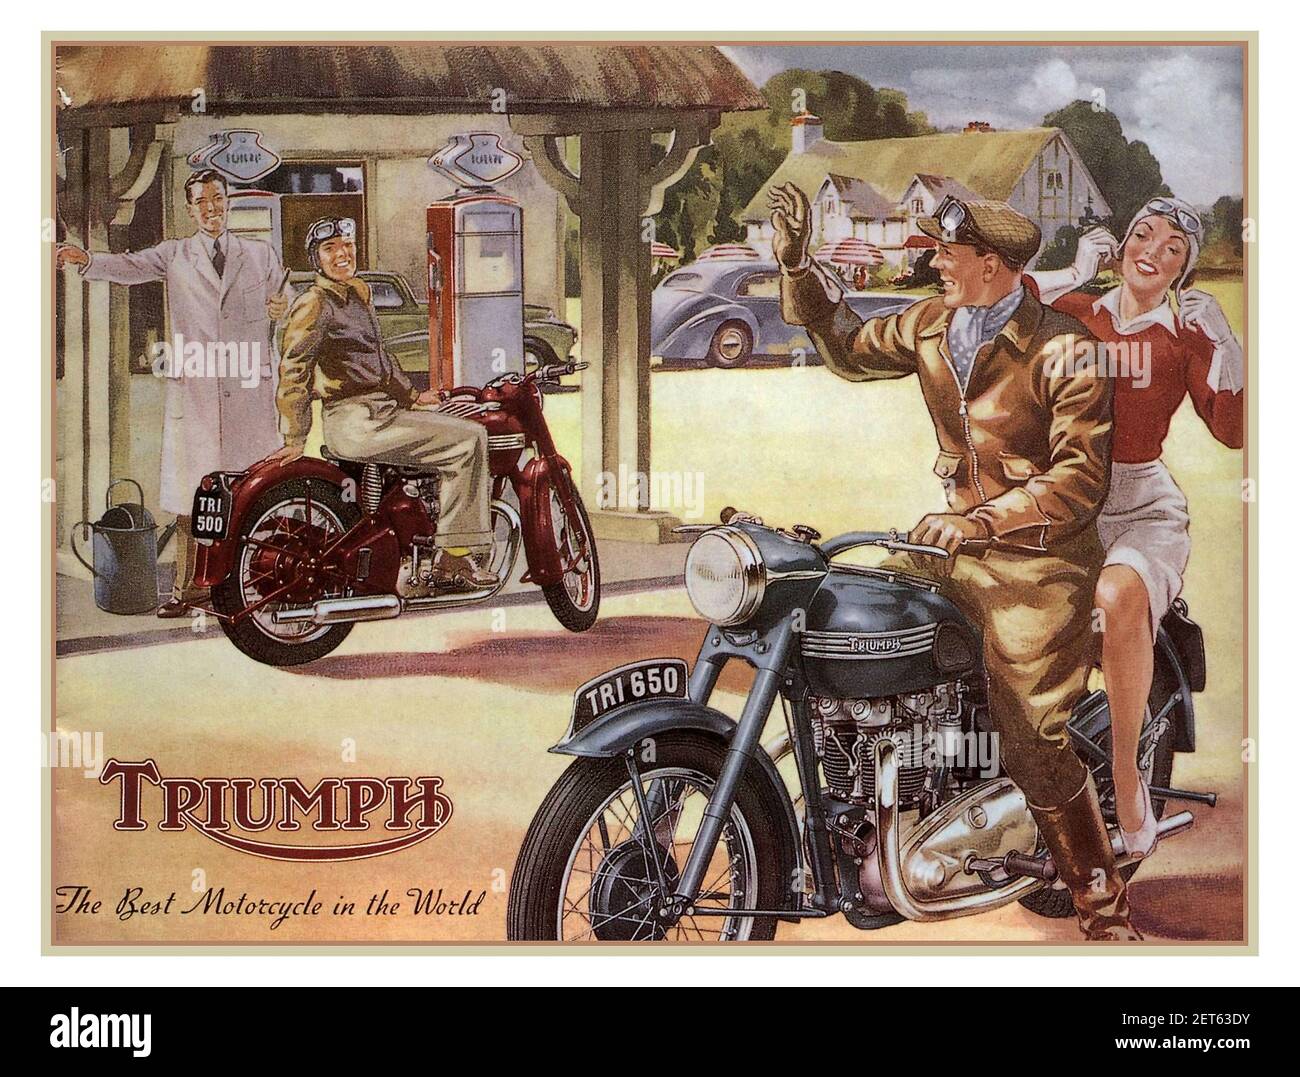 Vintage Triumph 500 & 600 Motorcycles pubblicità illustrazione poster UK Anni '50 ‘ la migliore motocicletta del mondo’ (prima che i caschi di sicurezza fossero obbligatori) Foto Stock